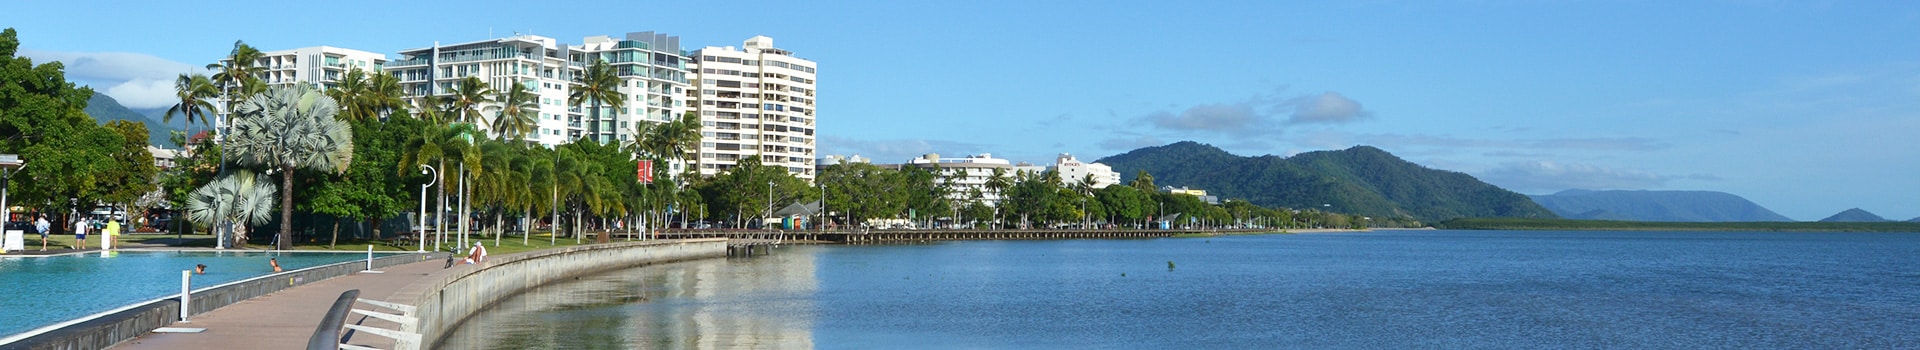 Brisbane - Cairns